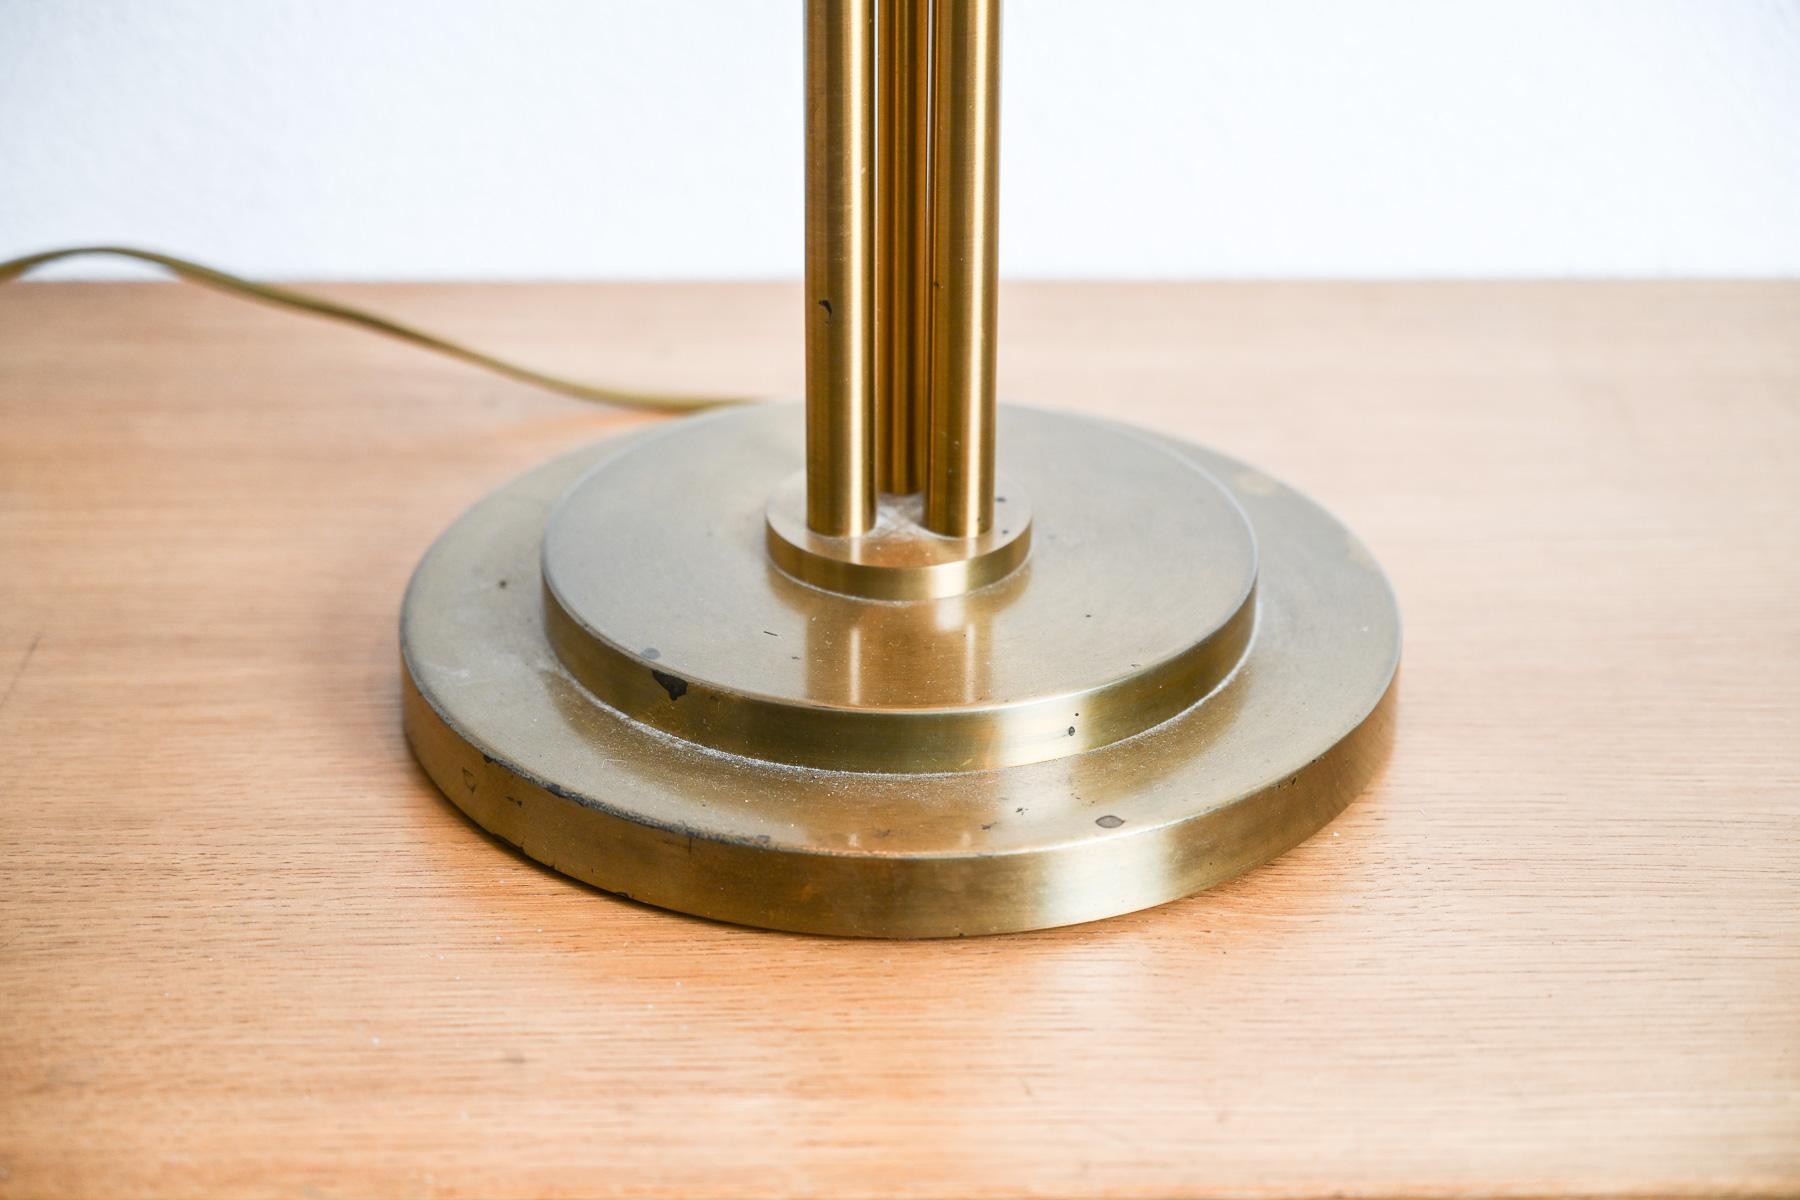 Version vintage de la lampe de table modèle 162 créée par Jean Perzel en 1927-1928. Cette version a été fabriquée sur mesure dans les années 1980. Souvent choisis par les grands architectes et décorateurs de l'époque (Michel Roux-Spitz, Jacques